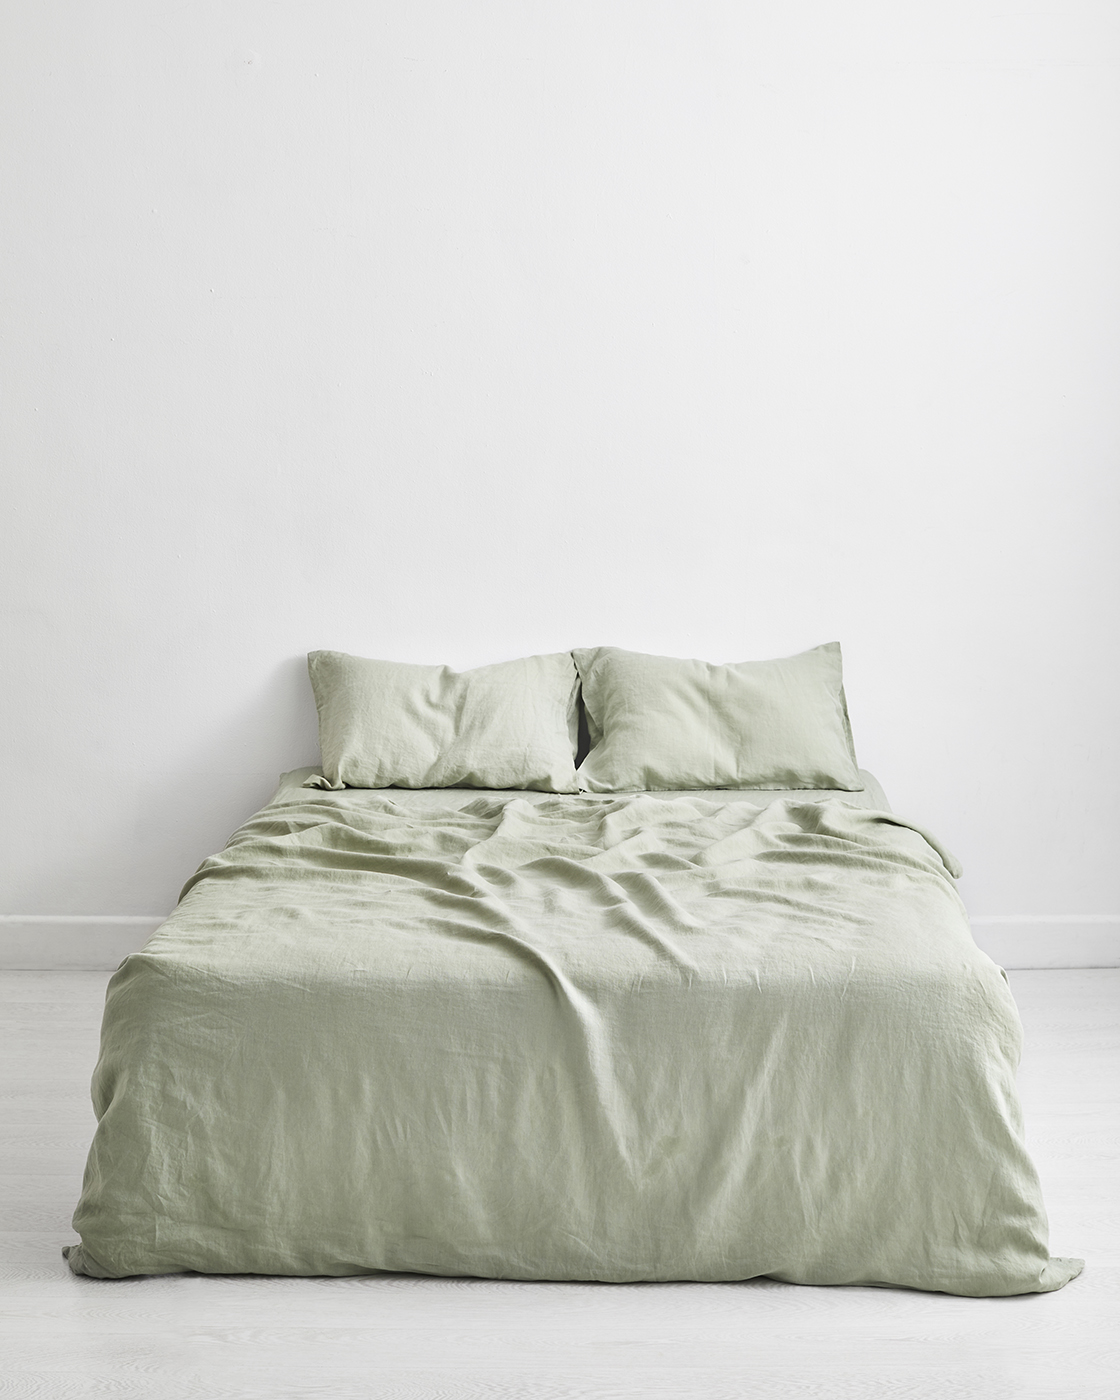 Flax linen bedding